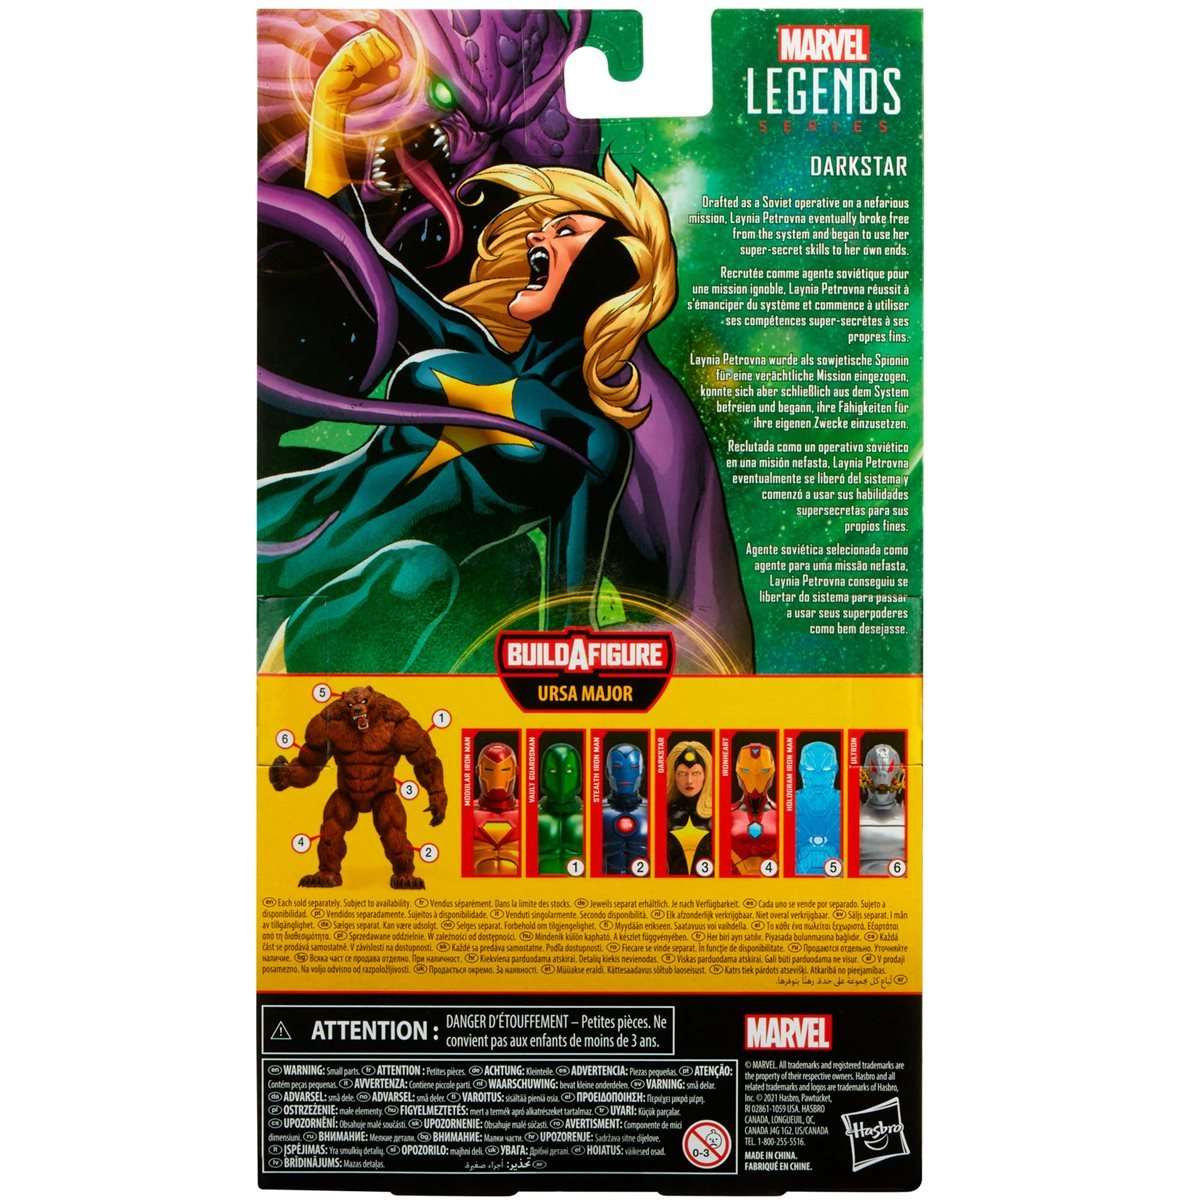 Marvel Legends Ursa Major build a figure wave Comic Darkstar 6-inch figure packaging back